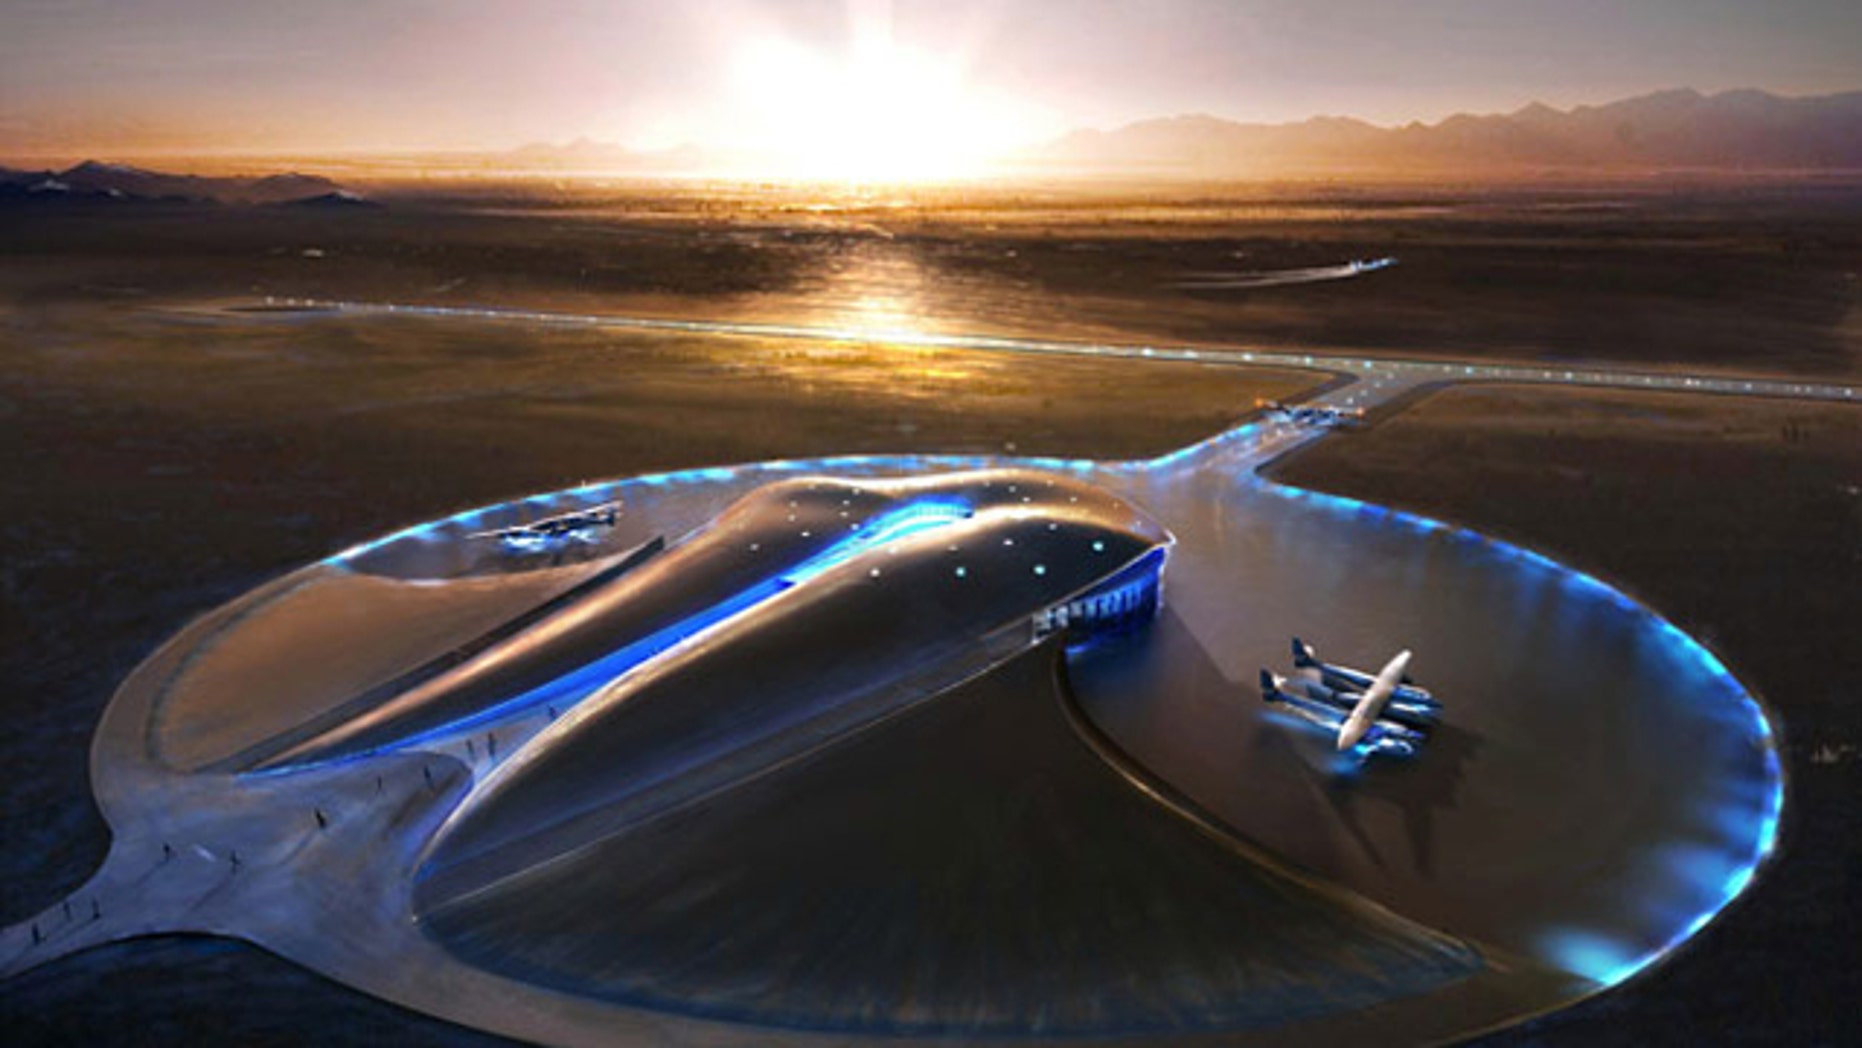 Spaceport America's First Runway Built in NM Desert Fox News